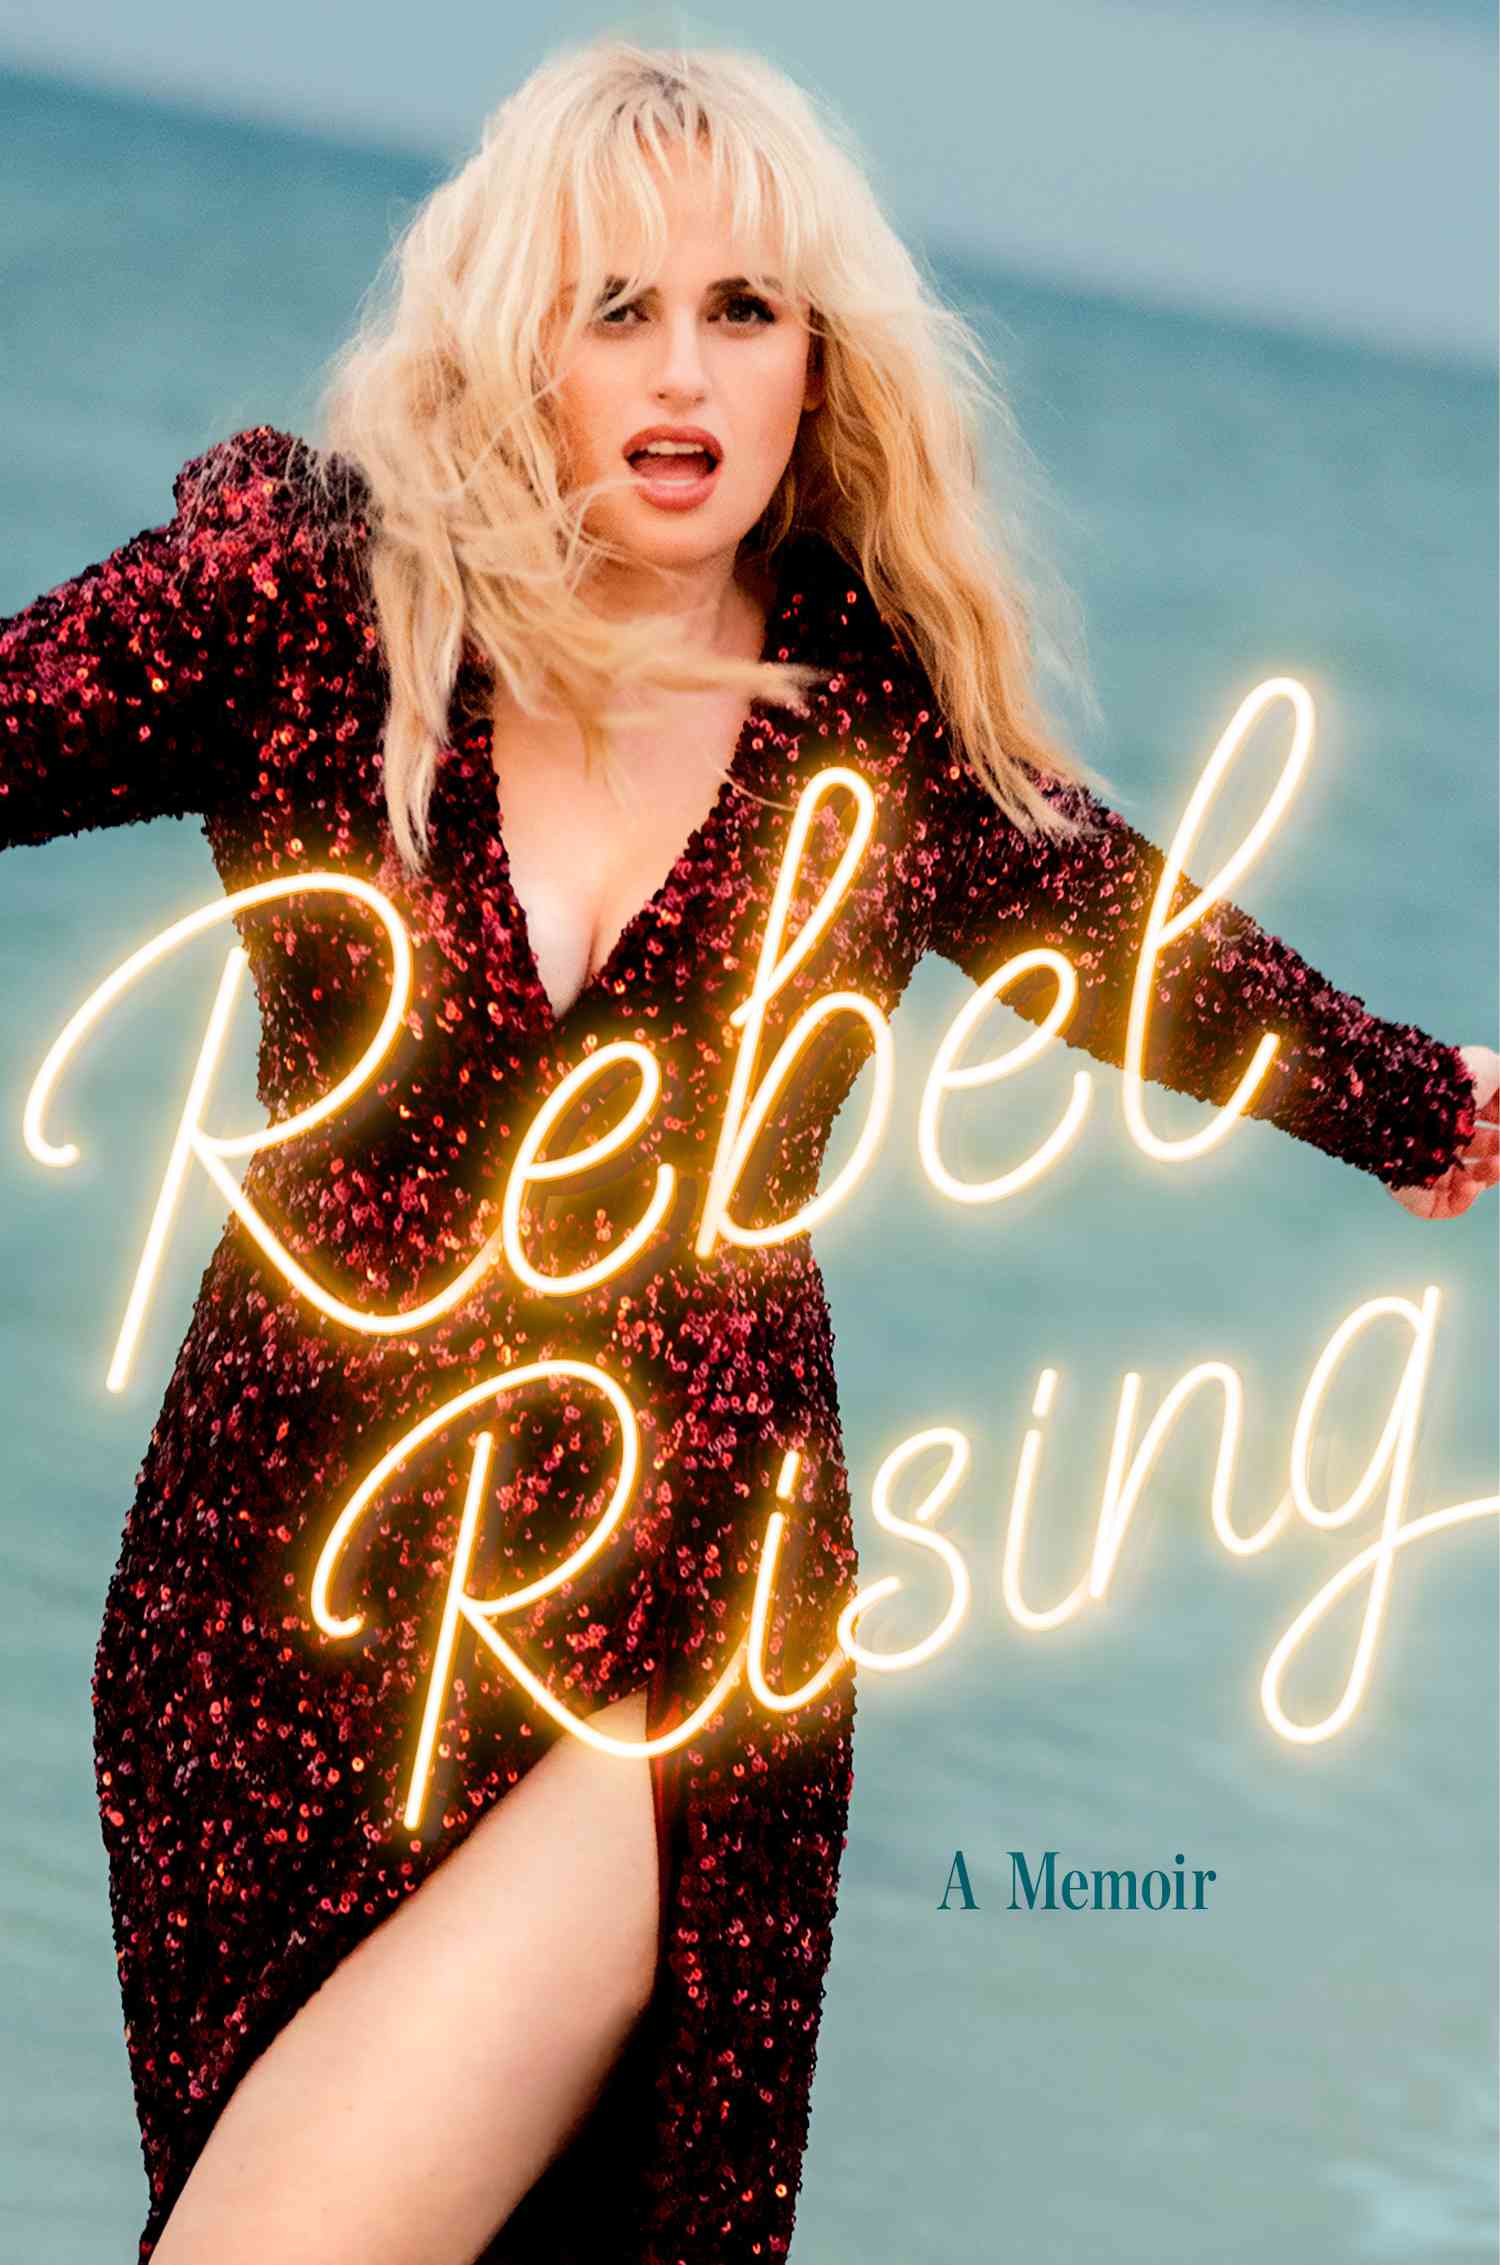 April People book picks book cover Rebel Rising Rebel Wilson